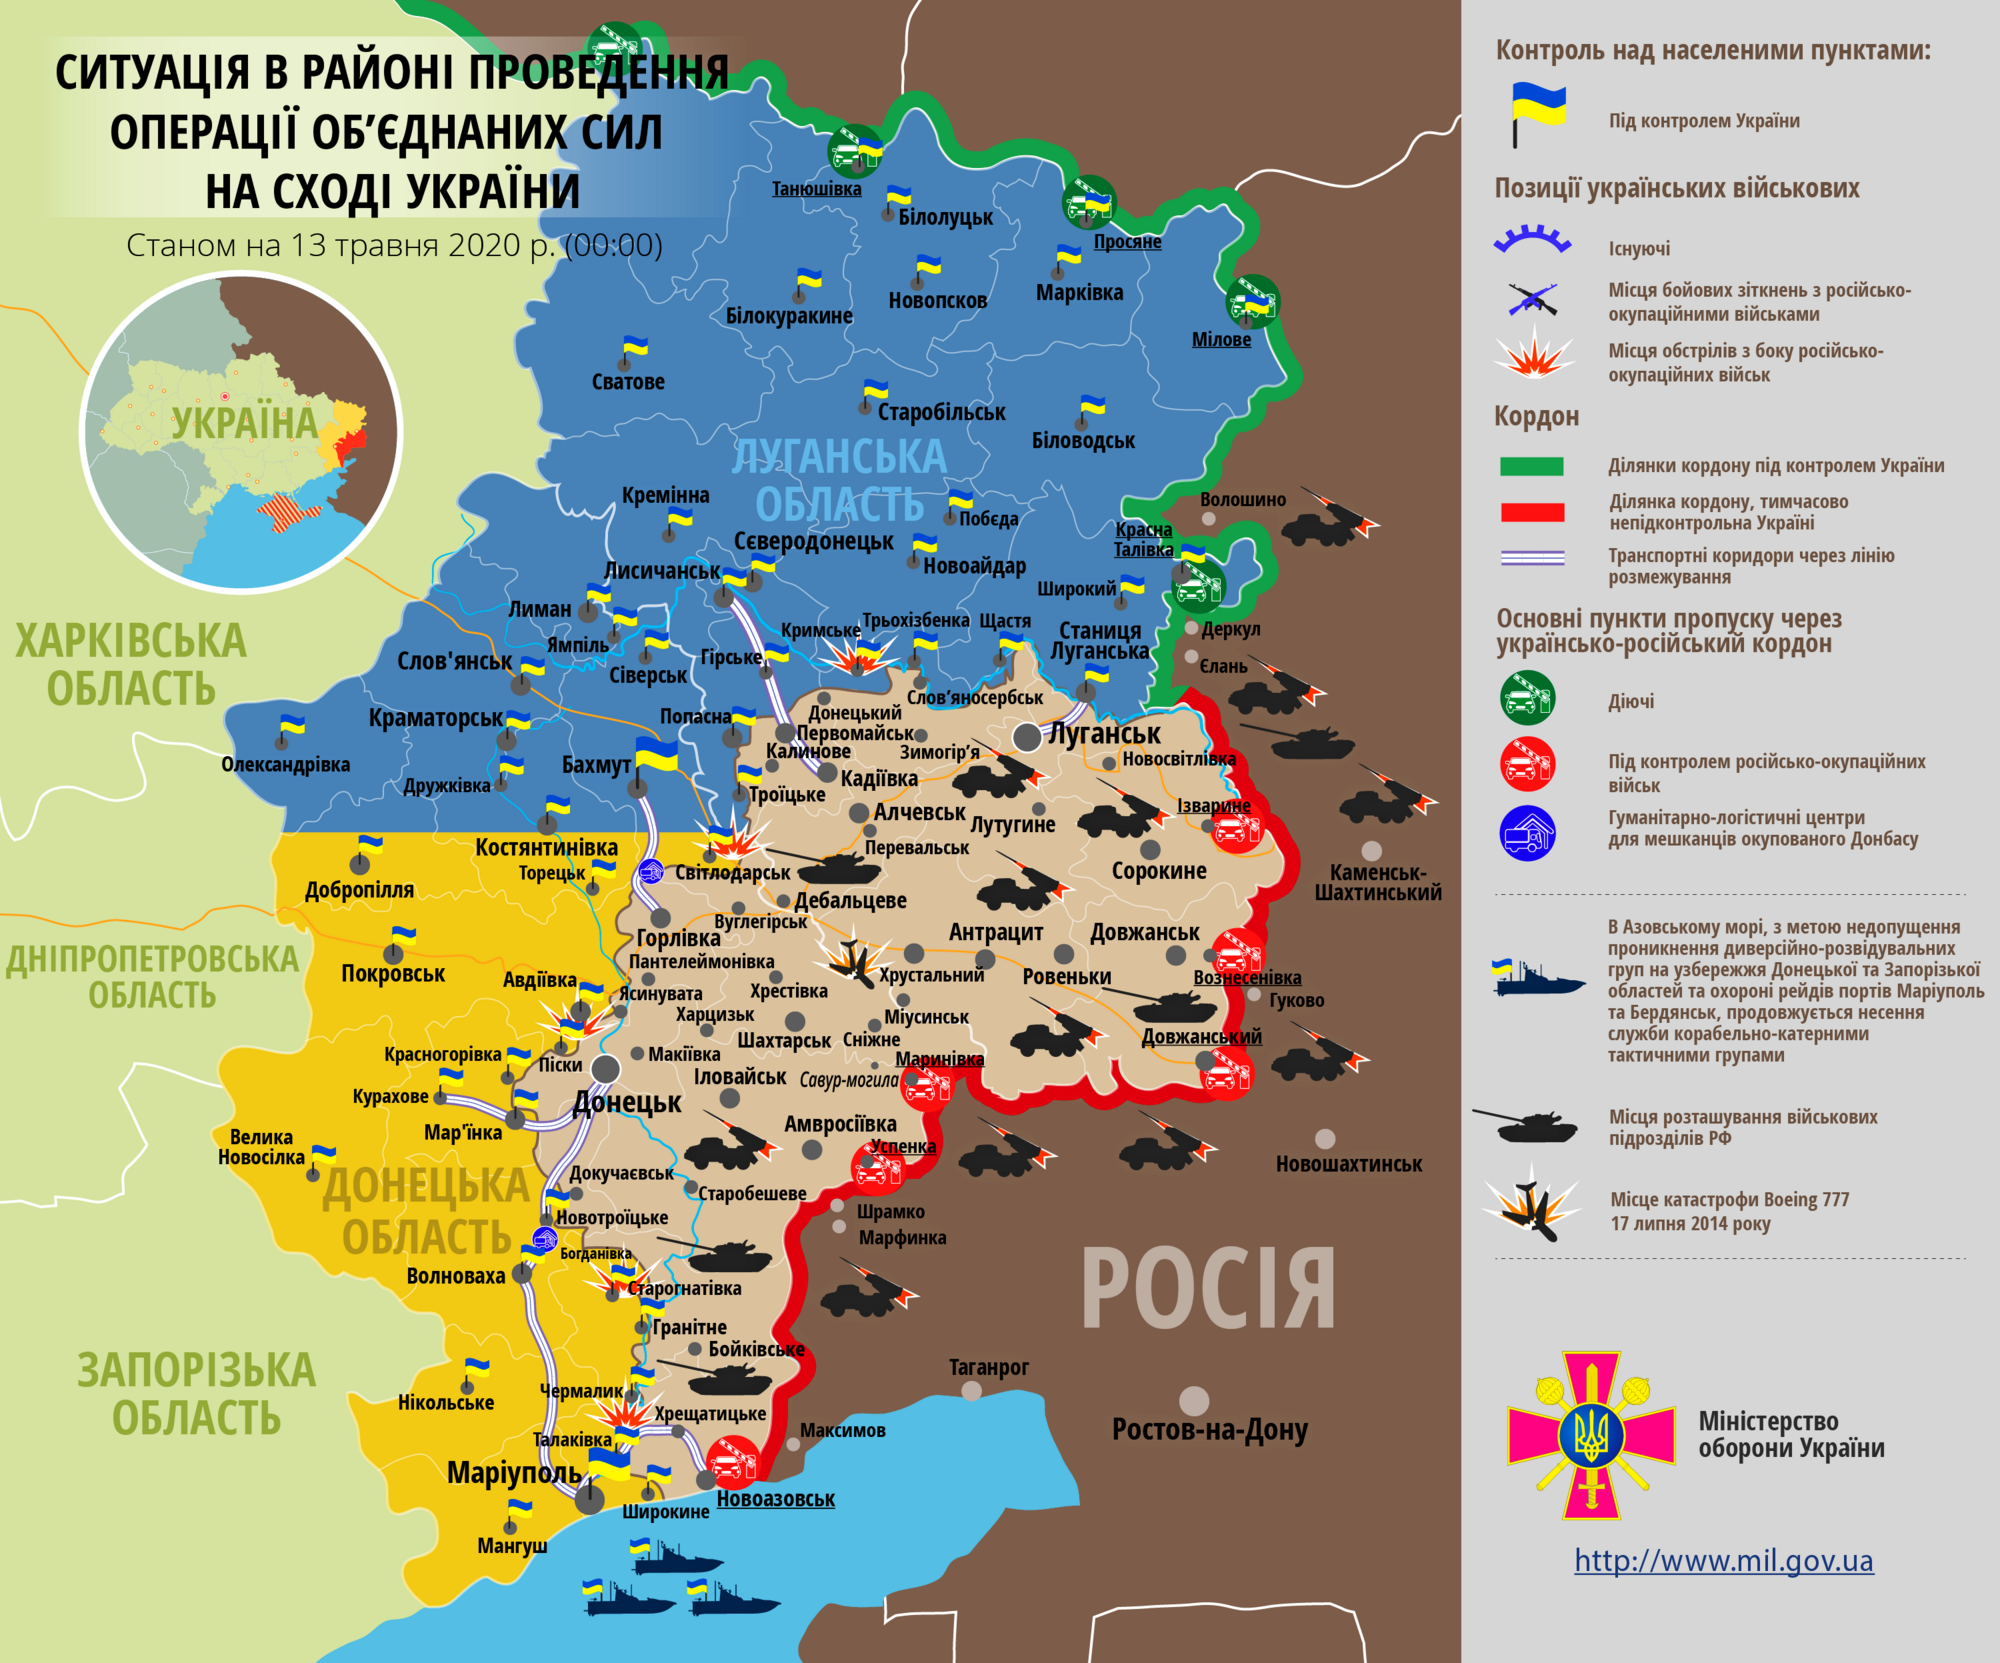 Ситуация в зоне проведения ООС на Донбассе